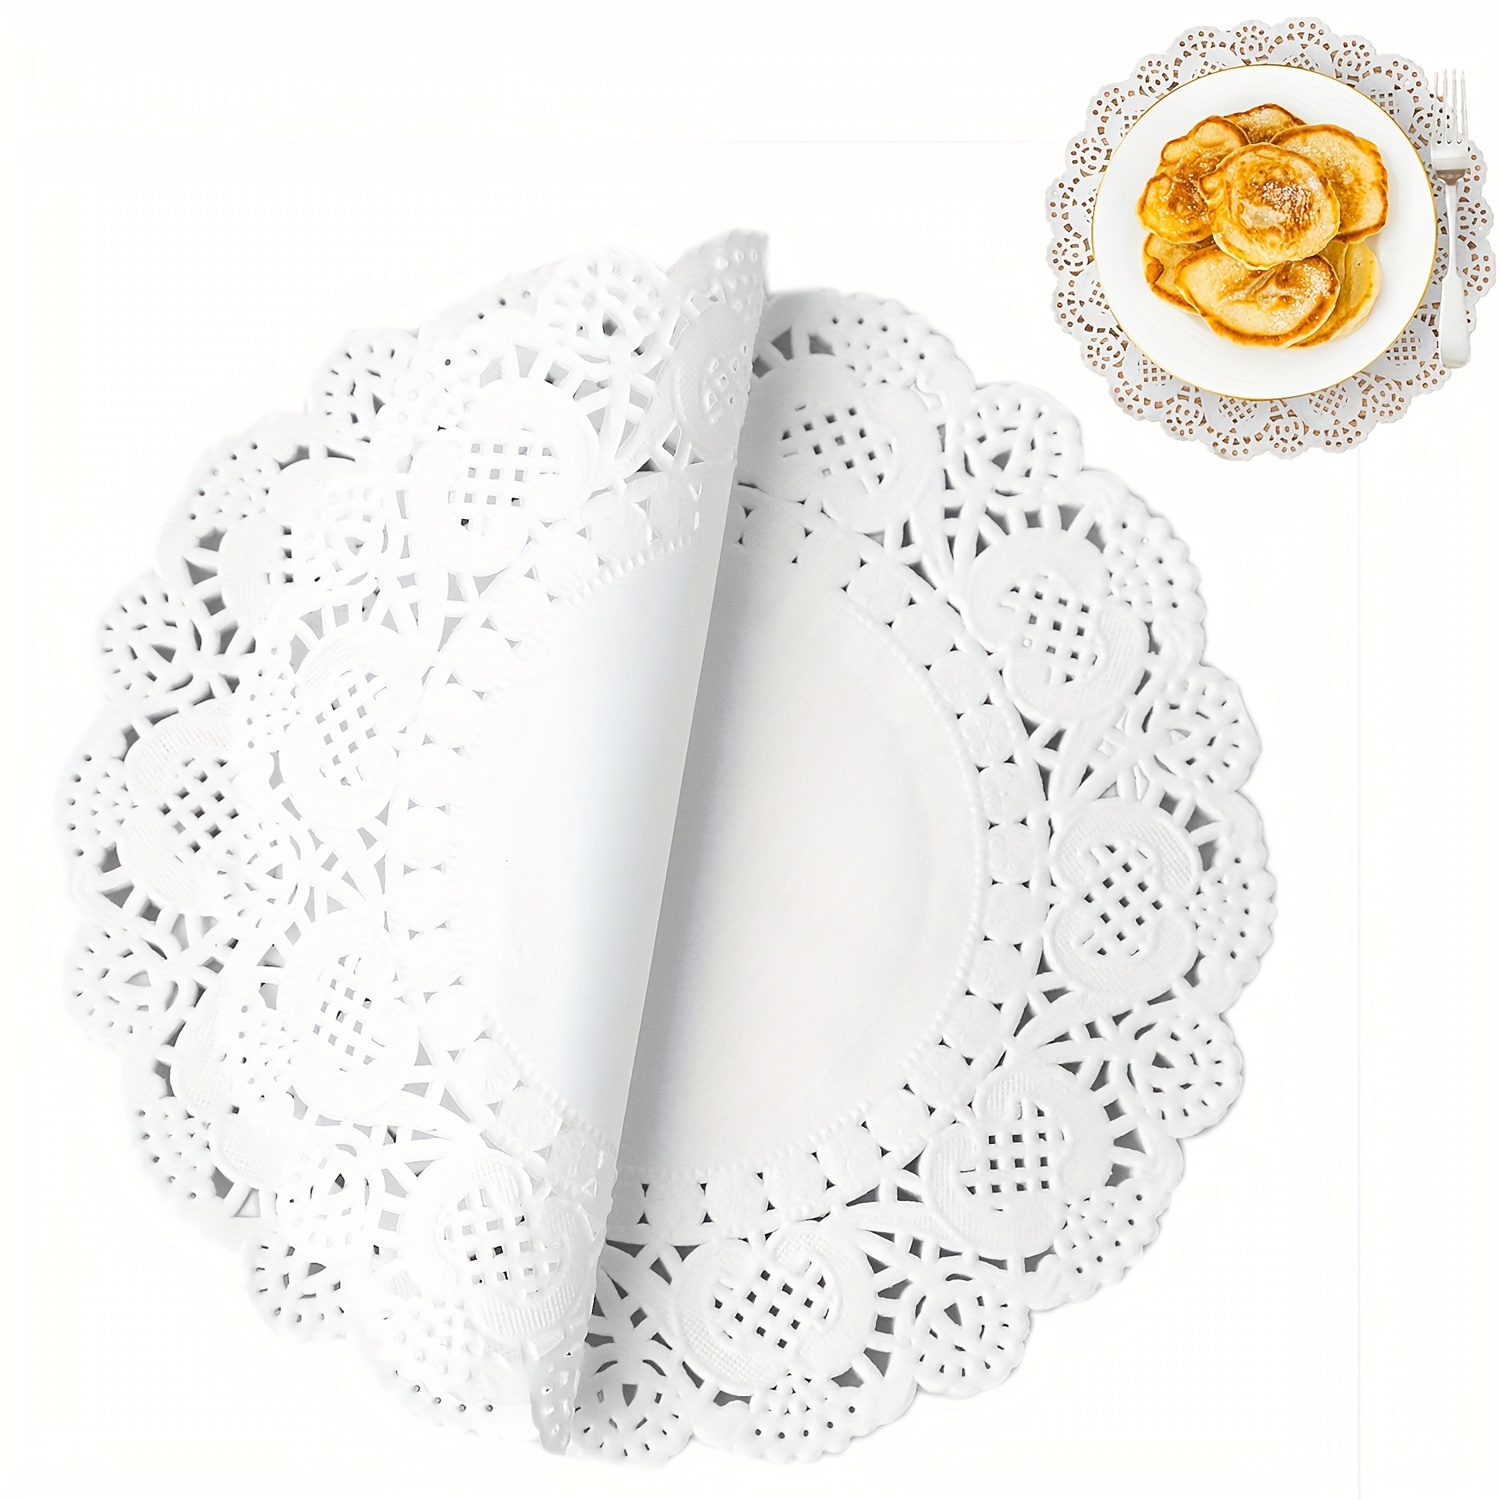 Paper Doilies, 100 Pieces 7.5 Lace Doilies Paper Round Decorative Paper Placemats Bulk for Cake, Desert, Wedding, Tableware Decoration